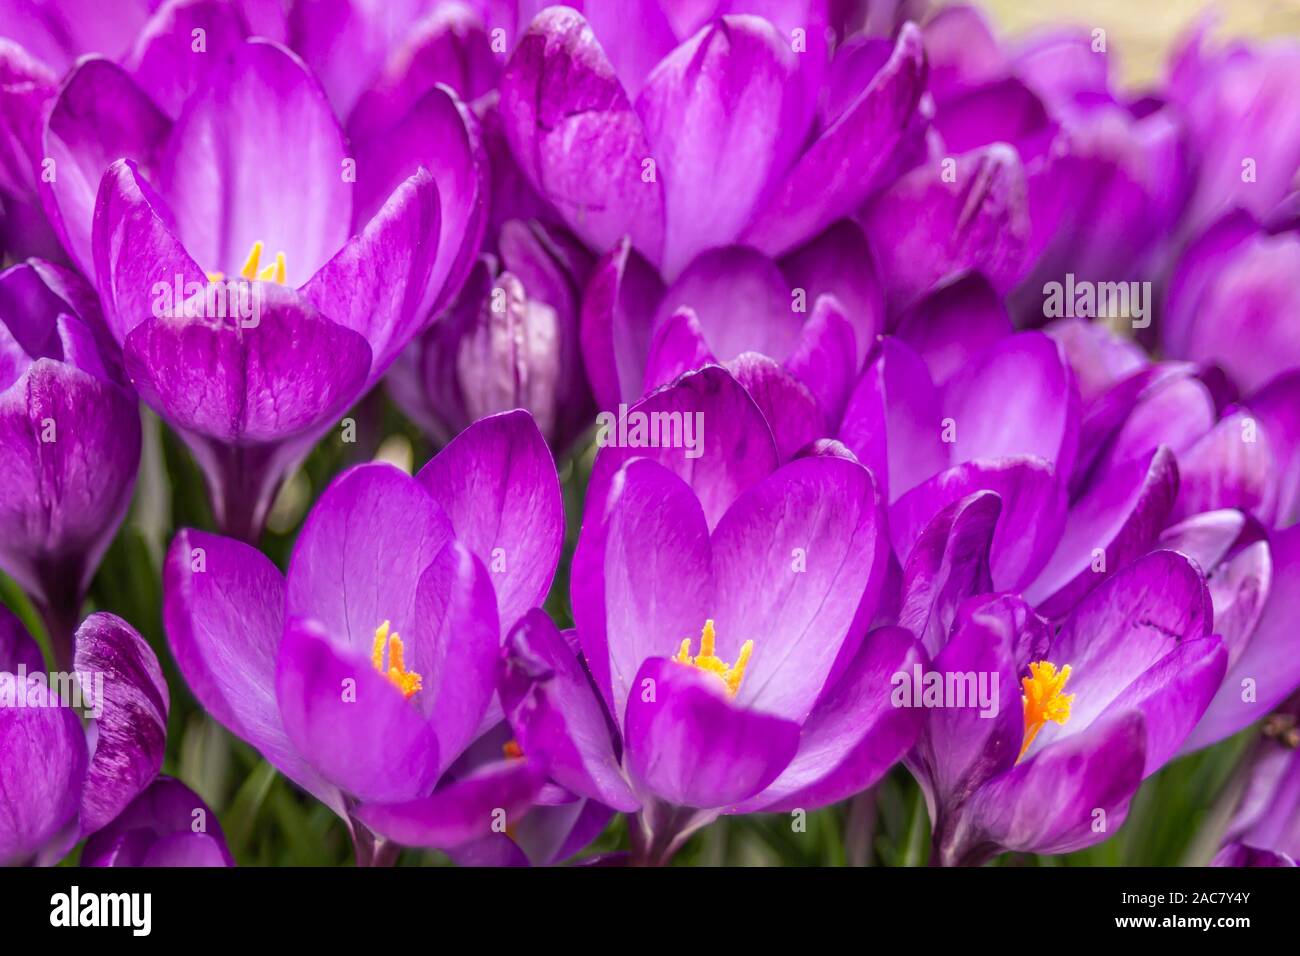 Krokus, Krokusse oder Plural croci ist eine Gattung von Blütenpflanzen in der iris Familie. Eine einzelne Krokus, ein paar Krokusse, einer Wiese, close-up Stockfoto